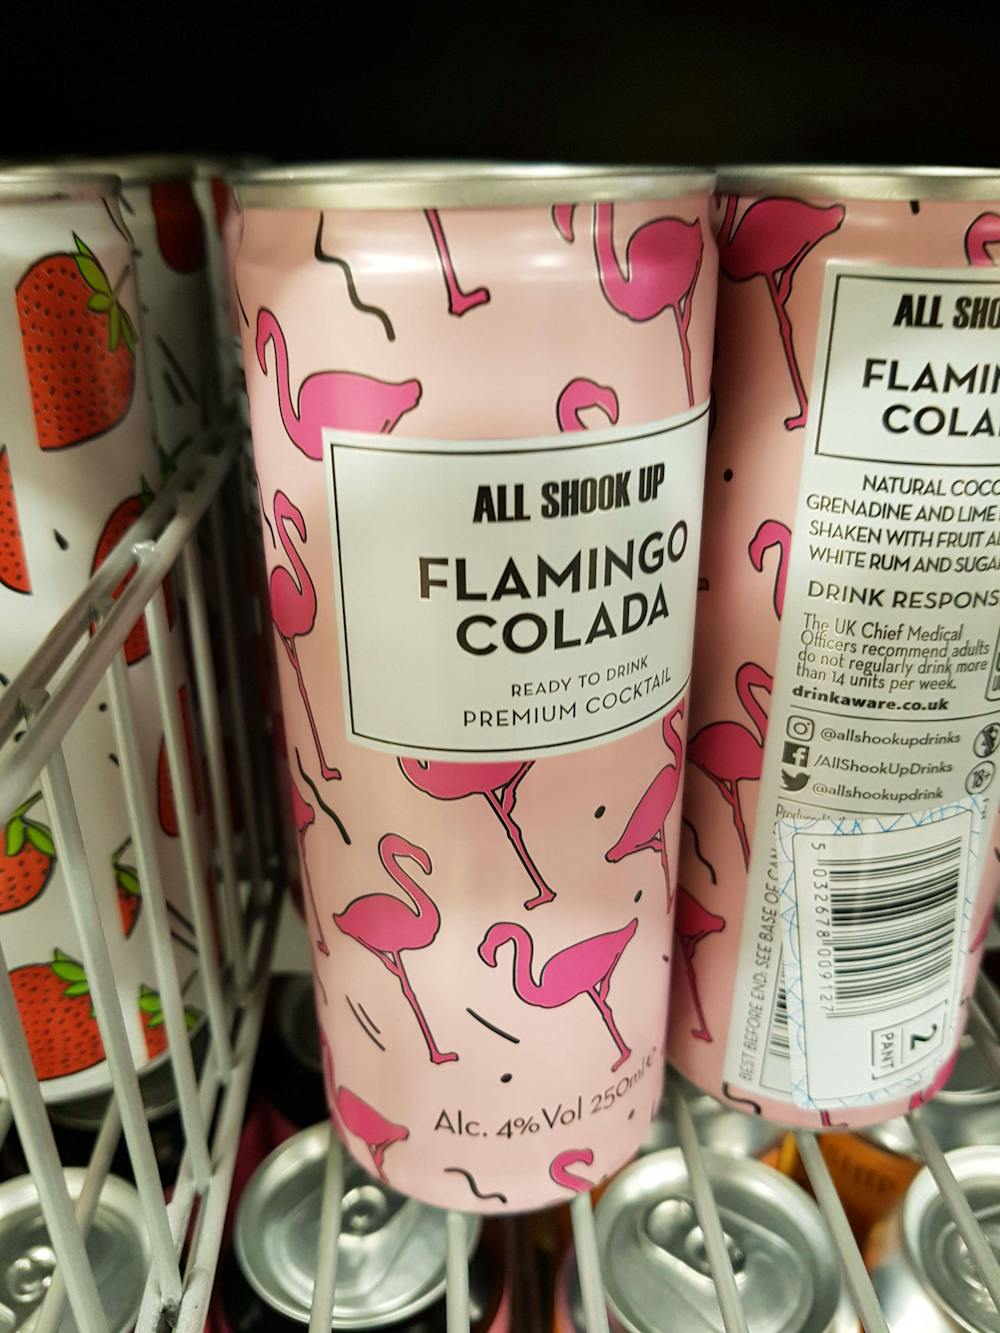 Flamingo colada, All shook up